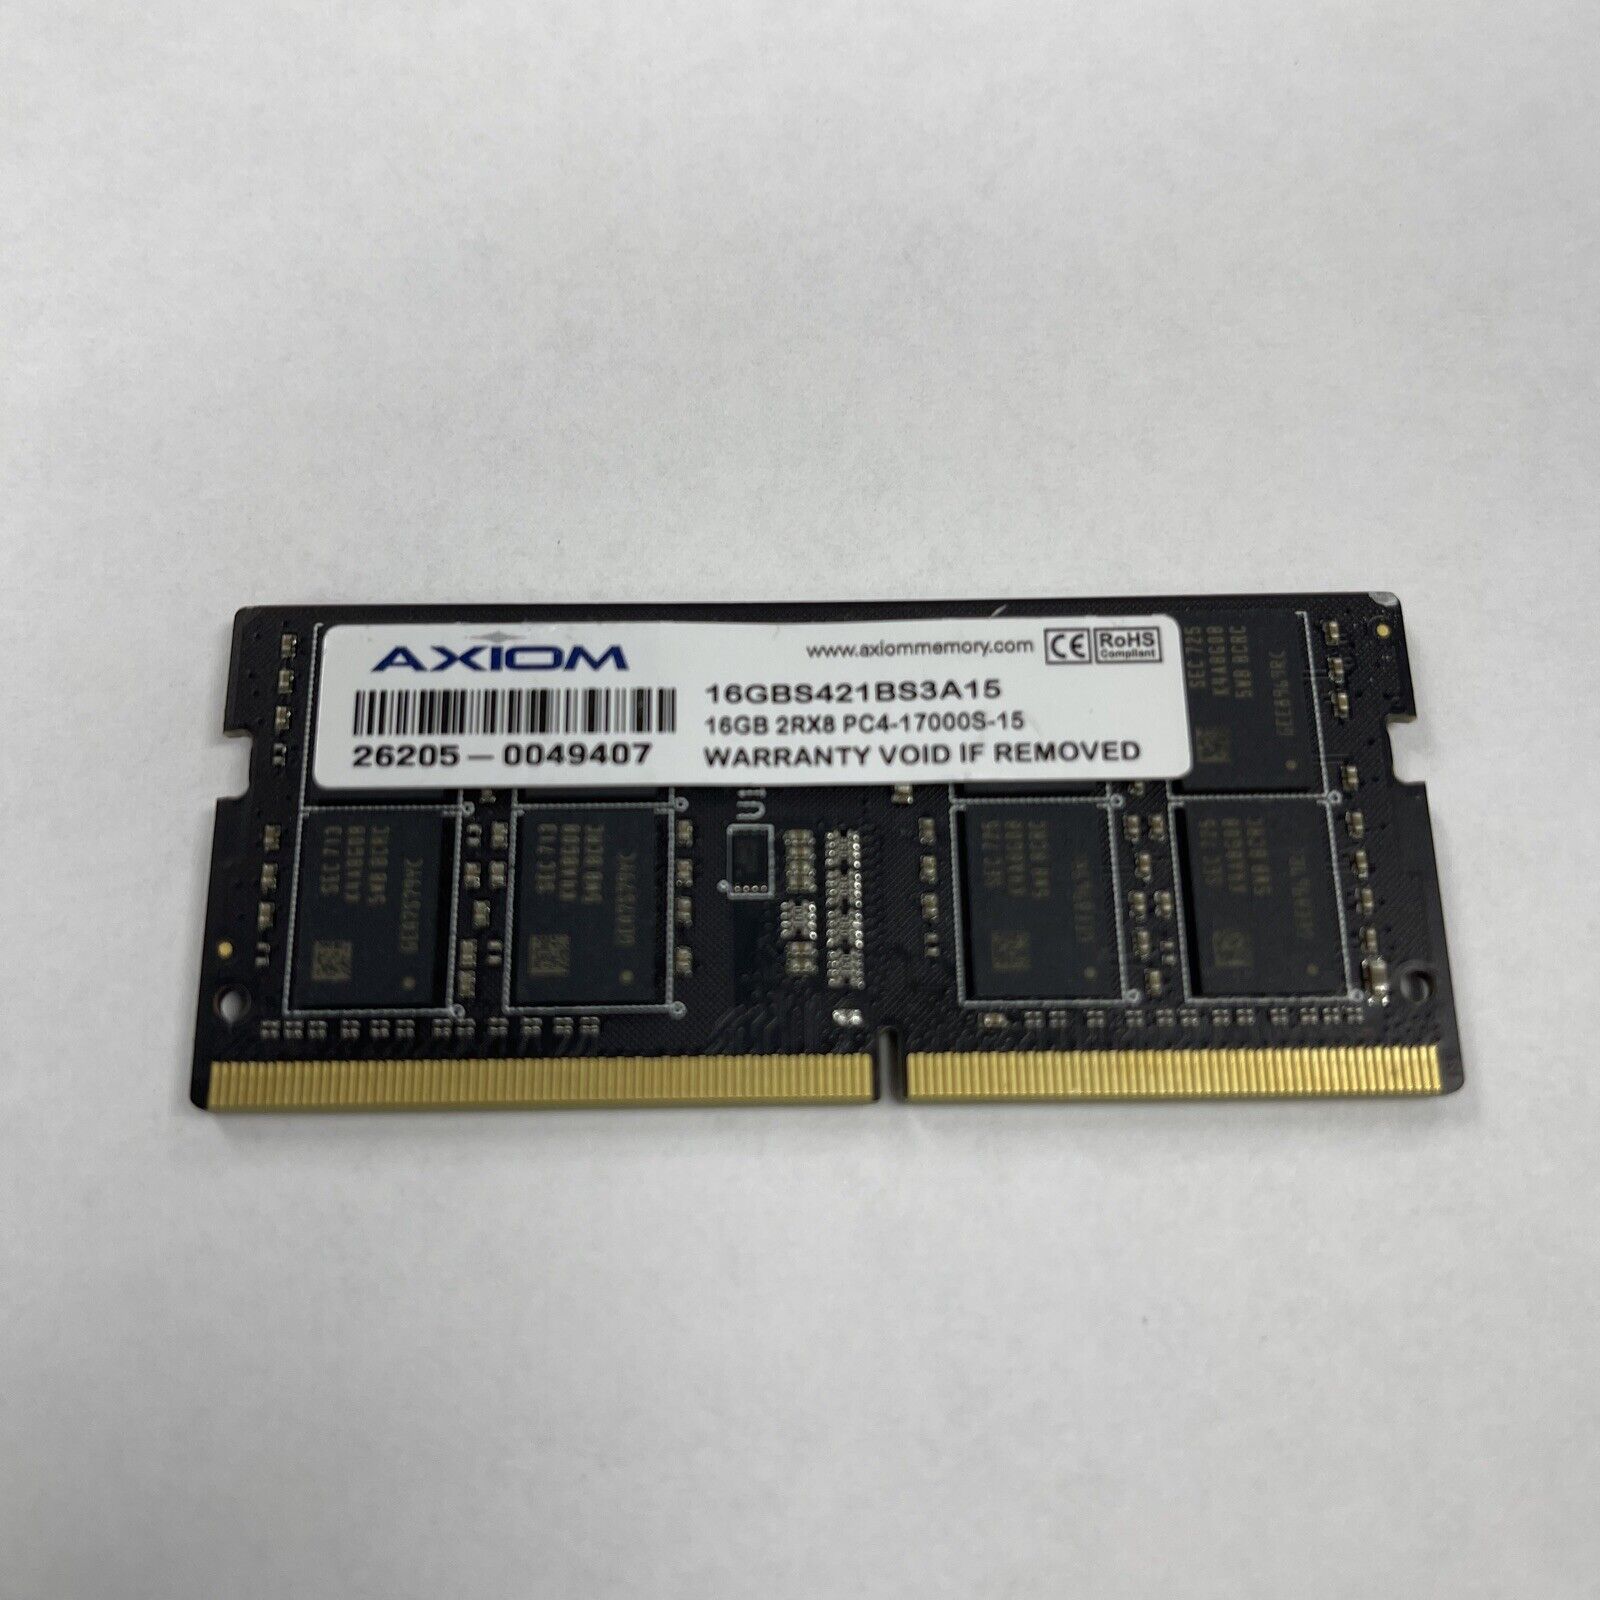 SODIMM RAM Axiom DDR4 | 16GB |  2Rx8 PC4-17000-15  16GBS421BSA15